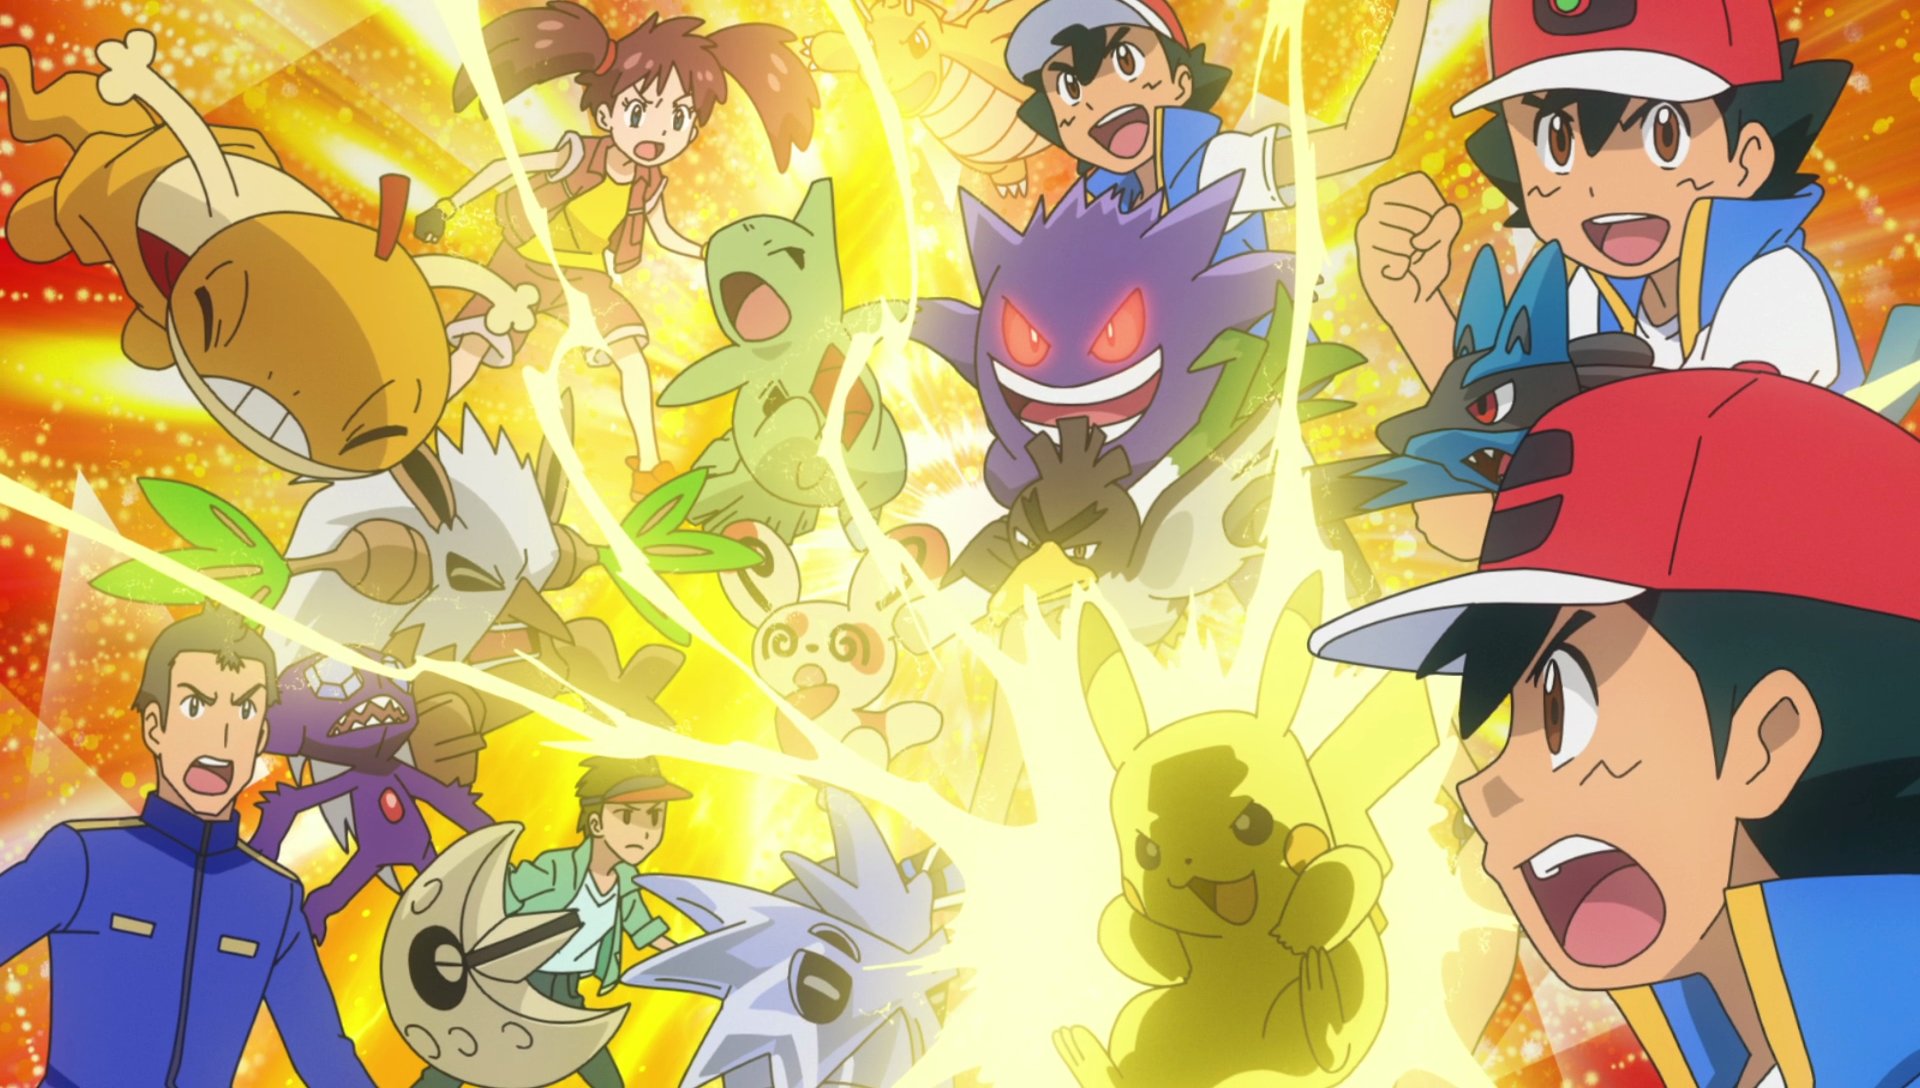 Anime Pokémon - Títulos dos Episódios da Batalha de Ash e Leon